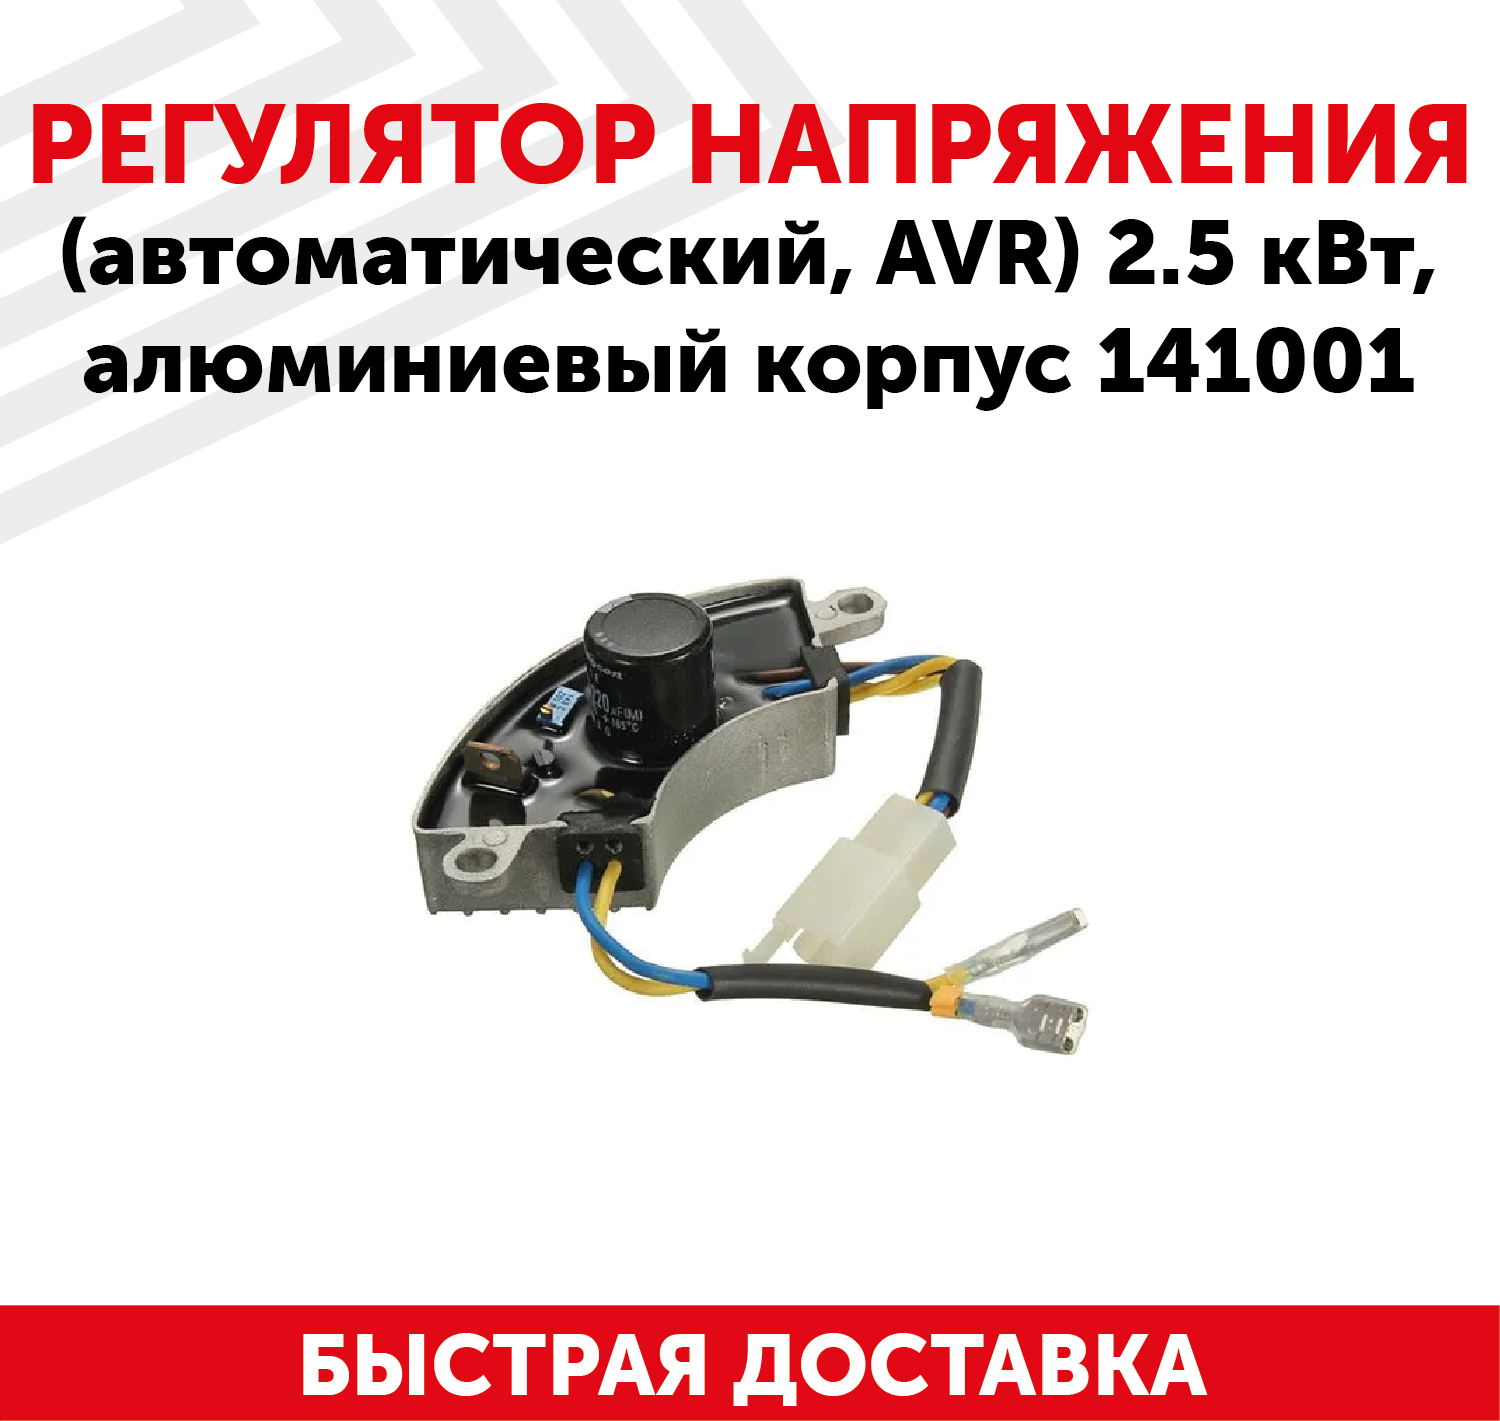 Автоматический регулятор переменного напряжения 220В (блок AVR) для генератора бензоинструмента, 2.5 кВт, алюминиевый корпус, 141001